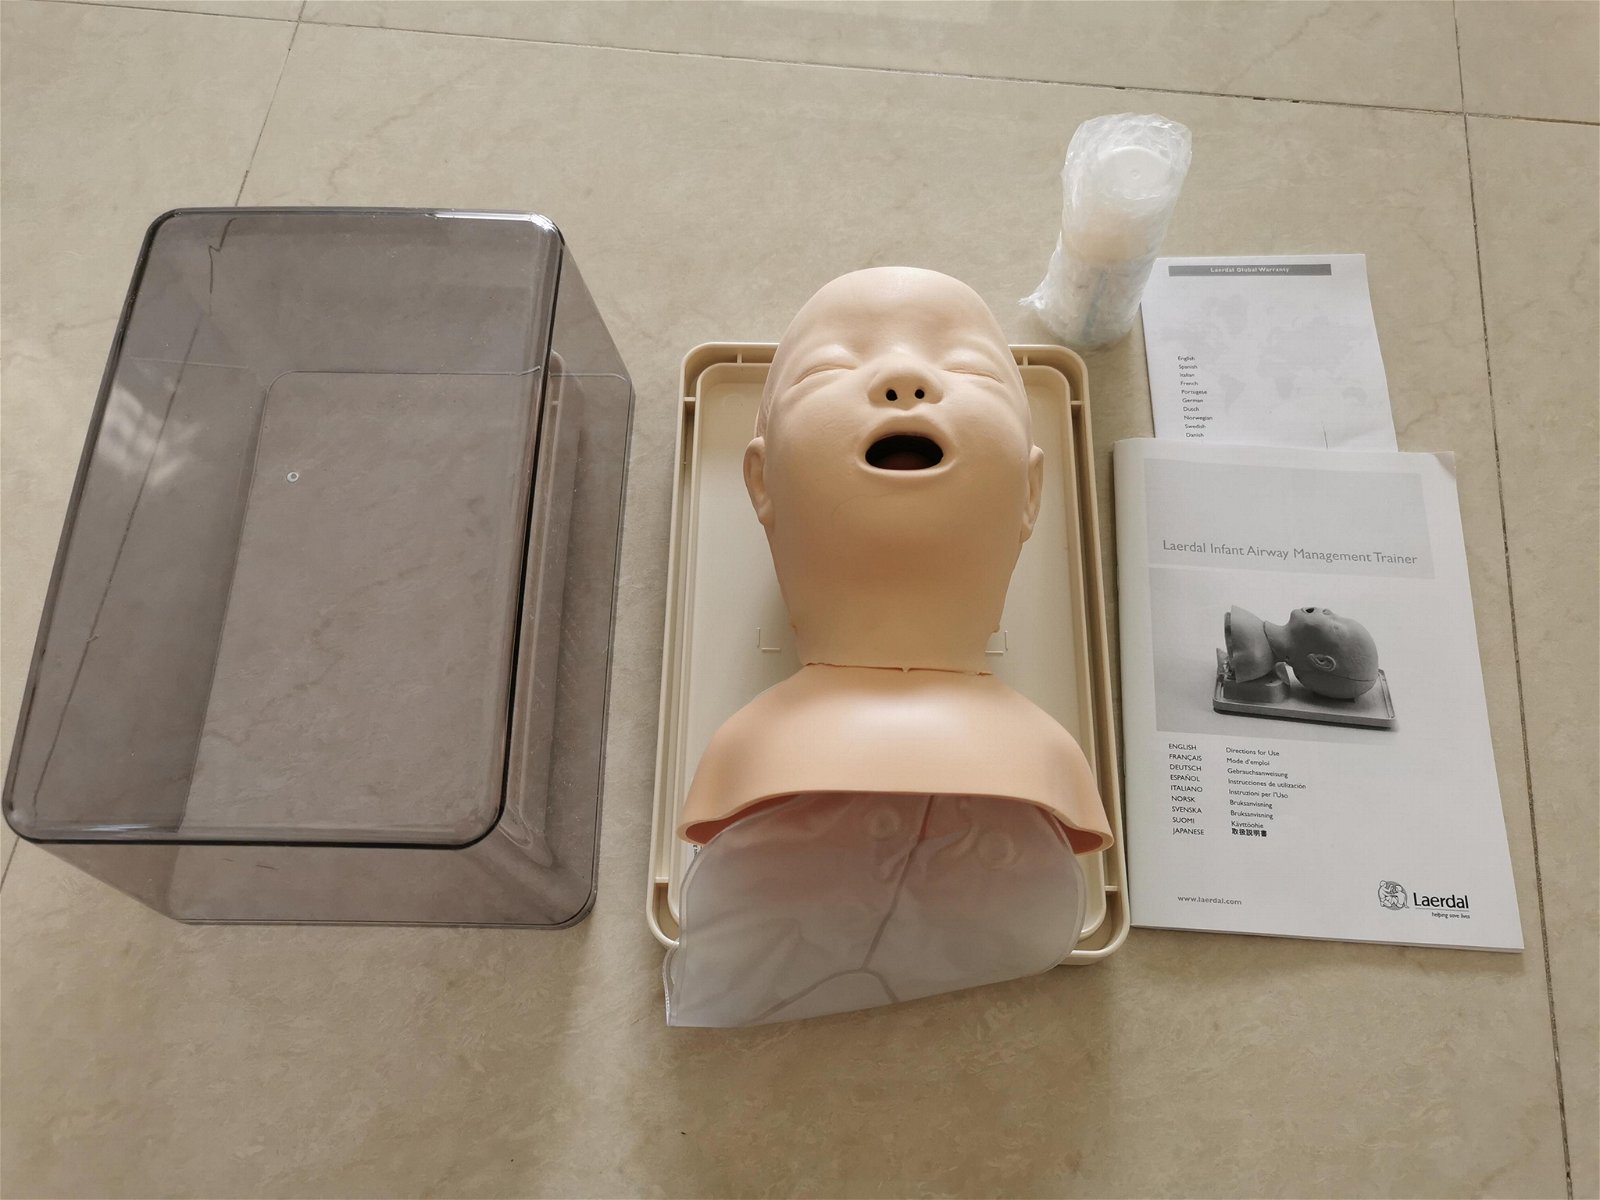 挪度嬰儿氣管插管訓練模型250-00250，小儿氣道管理模型 2